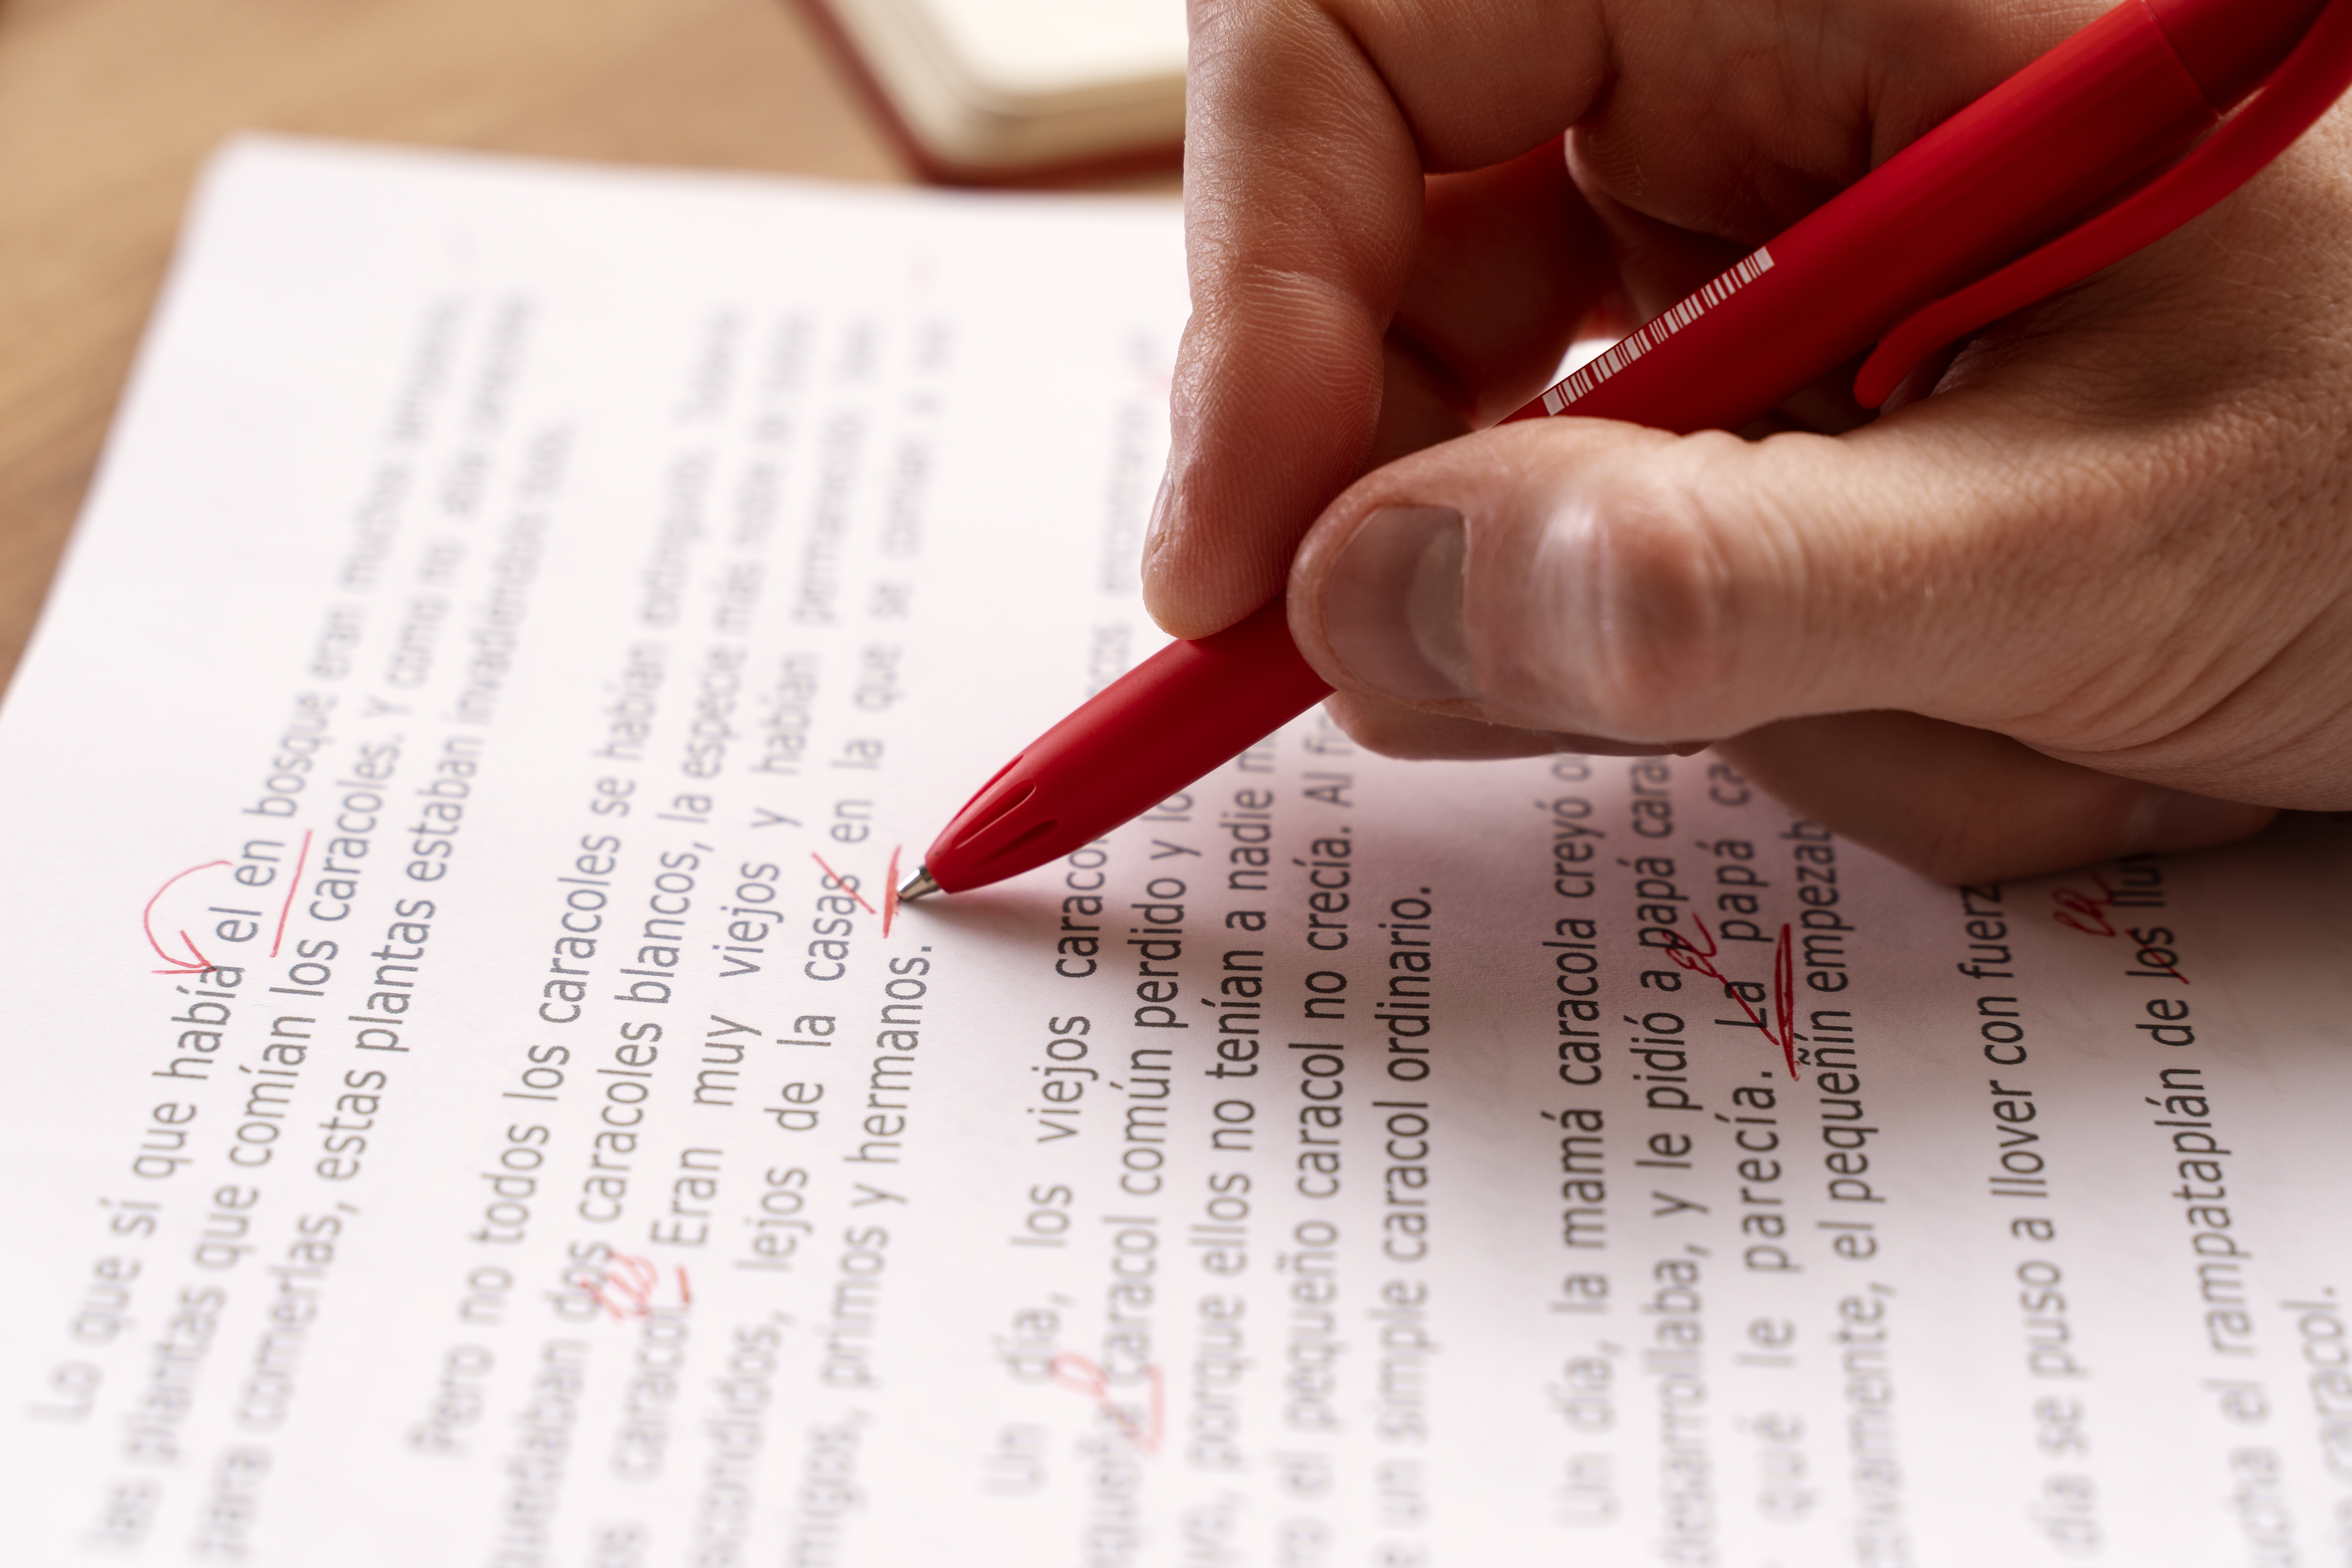 มือคนตรวจการแปลเอกสารด้วยปากกาสีแดง